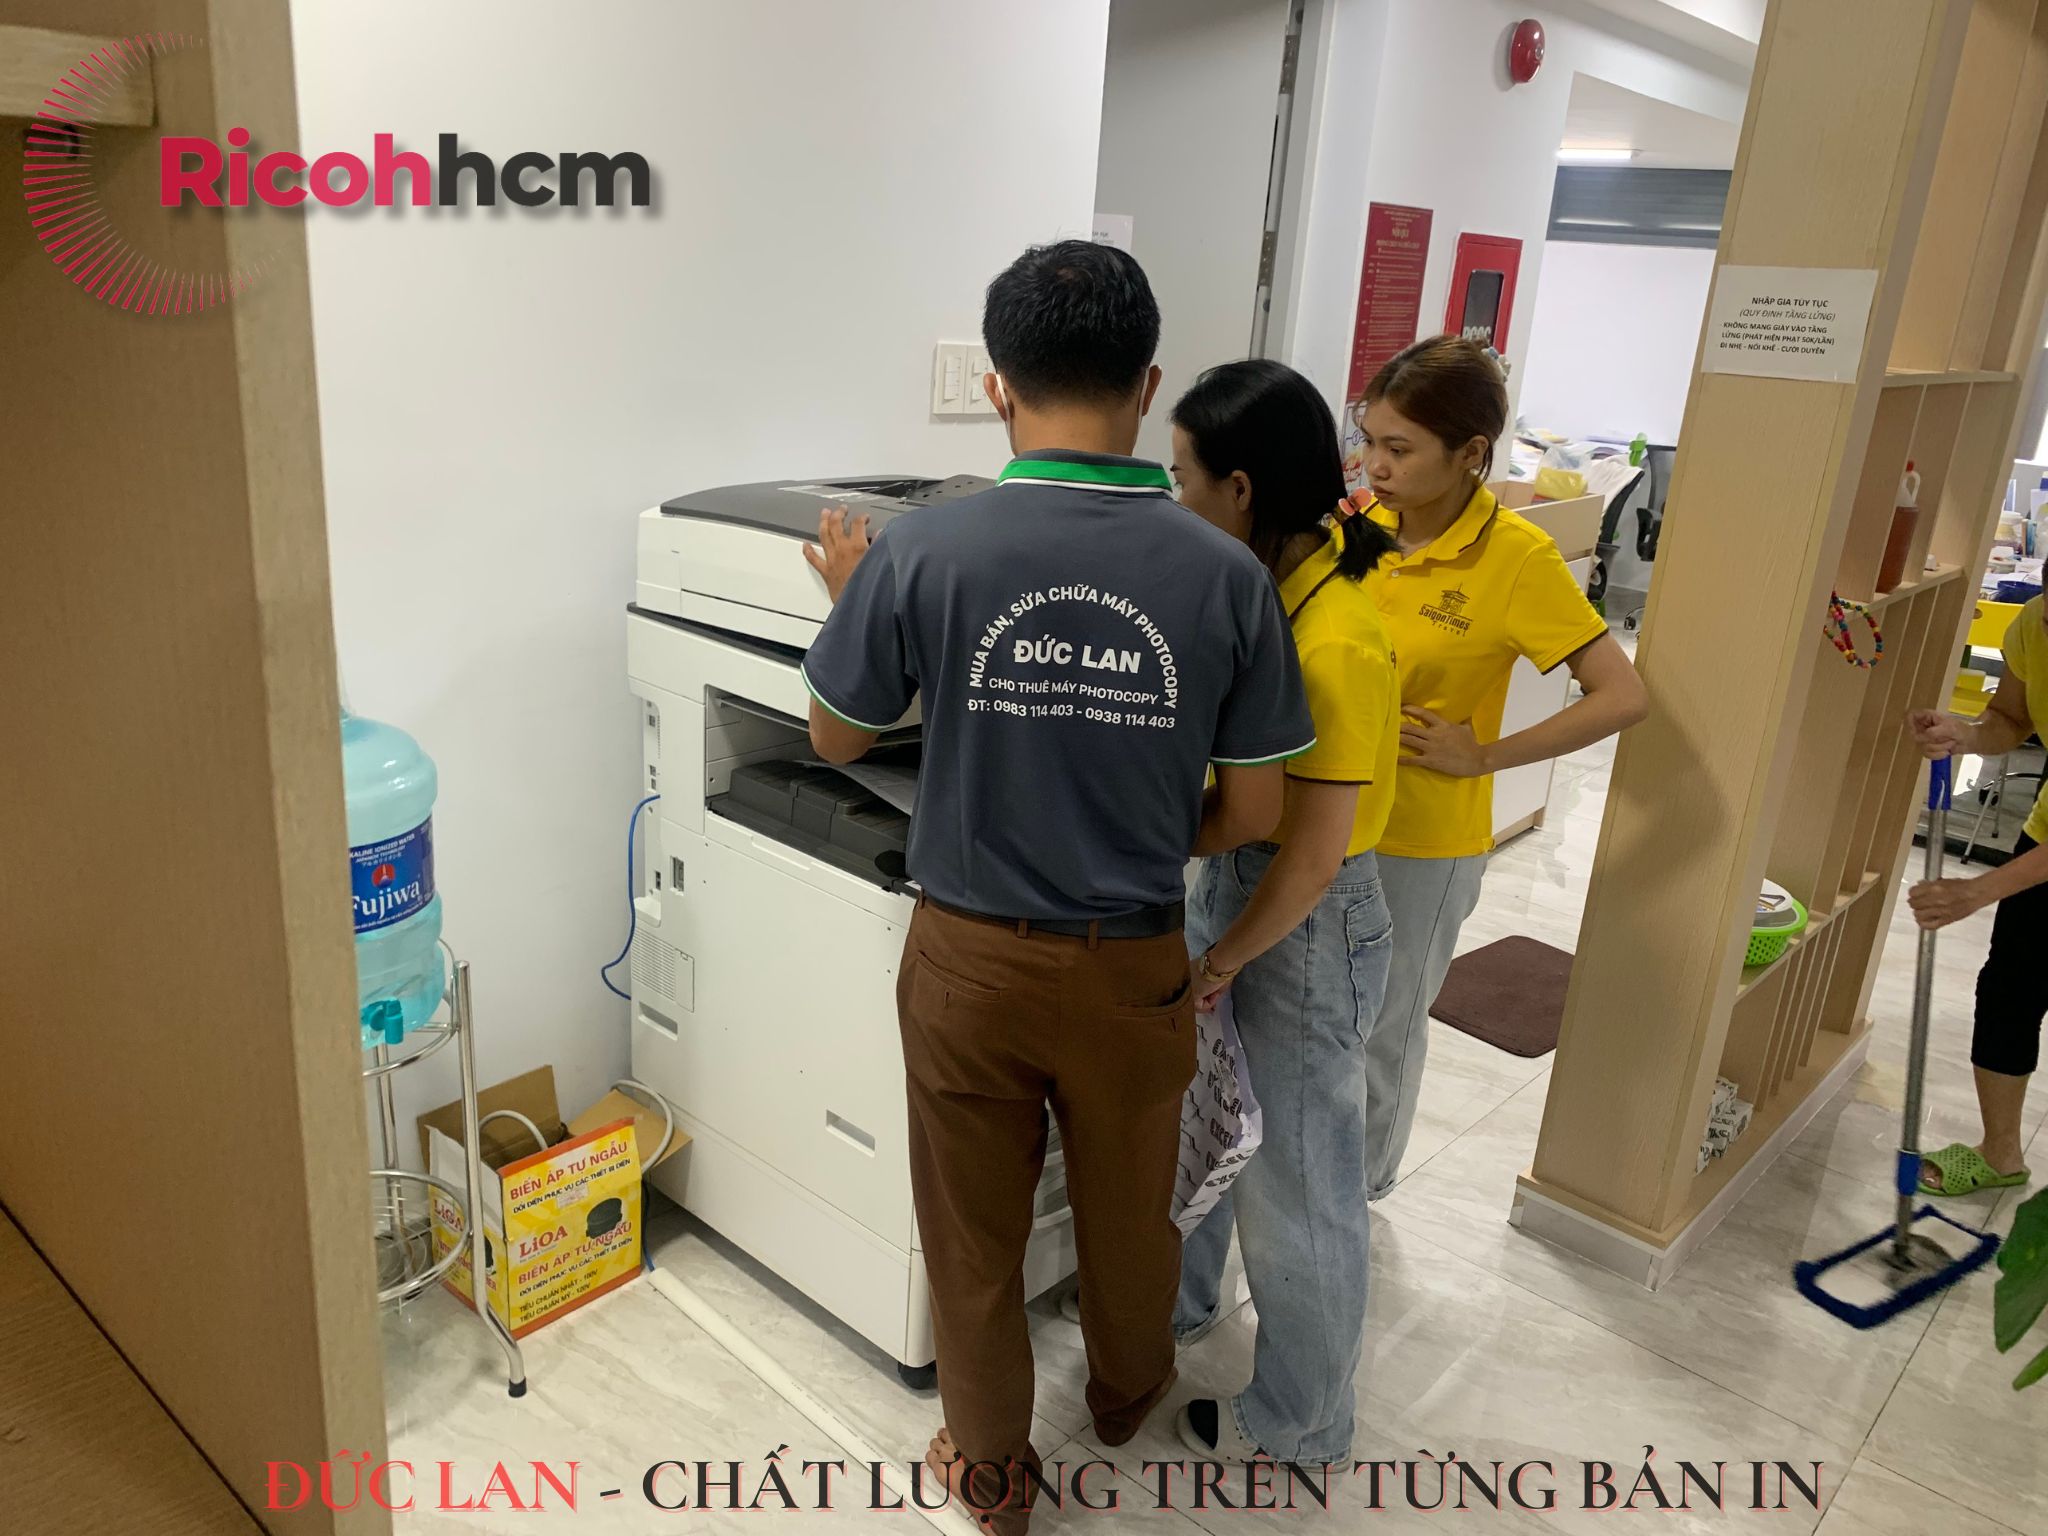 Thuê máy photocopy tại Tây Ninh không chỉ là giải pháp tiết kiệm chi phí mà còn giúp doanh nghiệp của bạn luôn bắt kịp với công nghệ mới nhất.